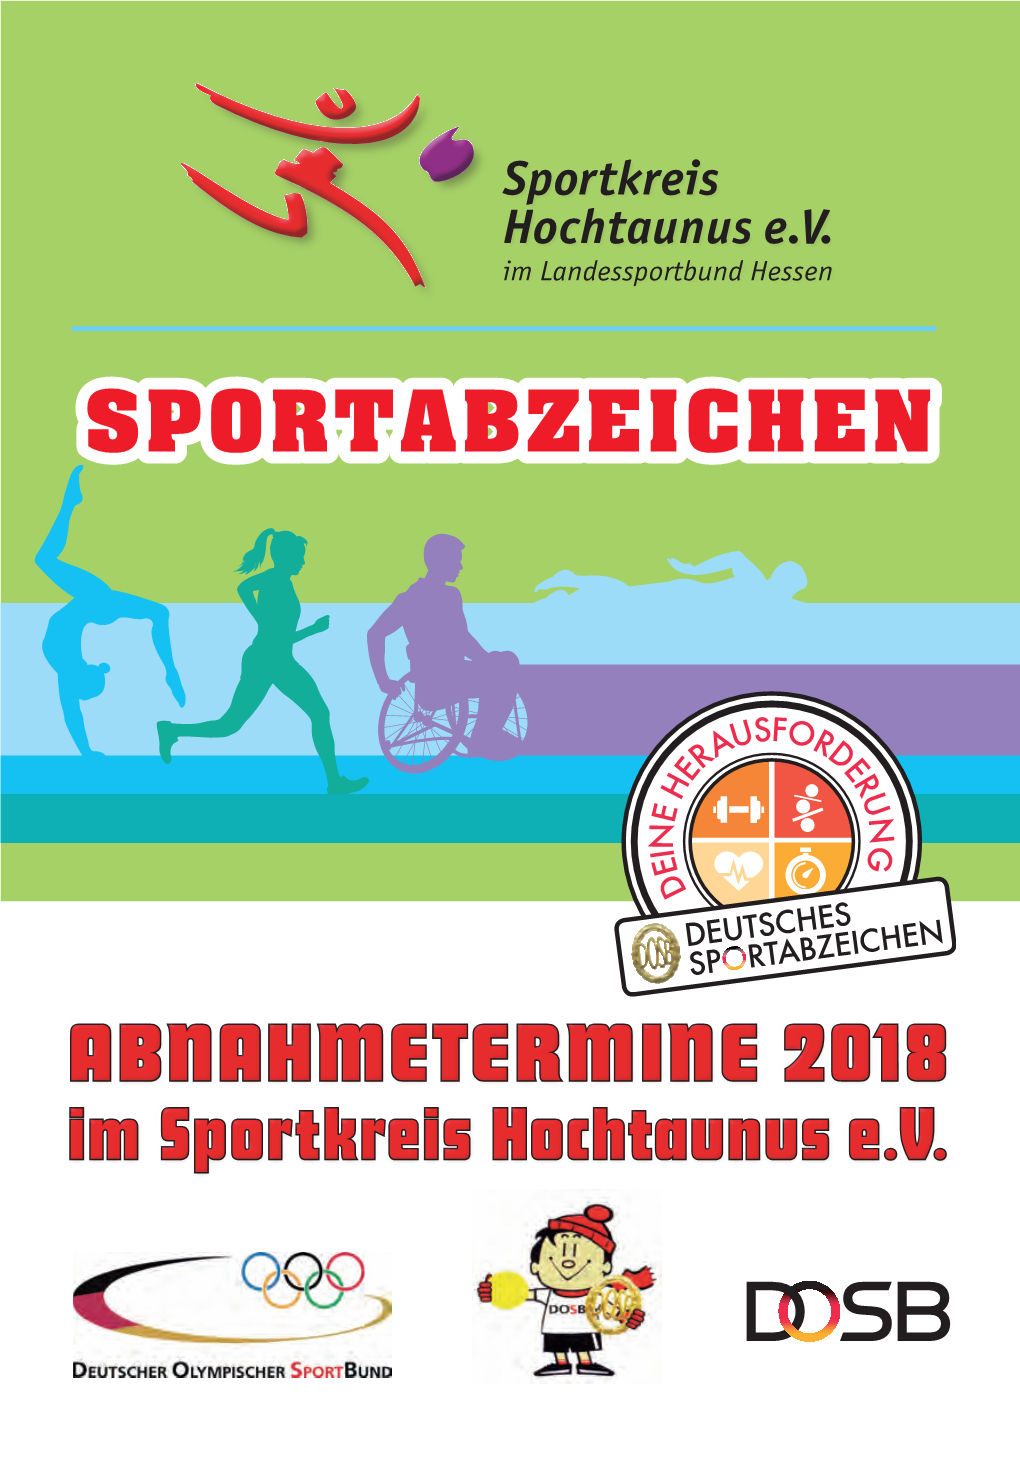 Sportabzeichen